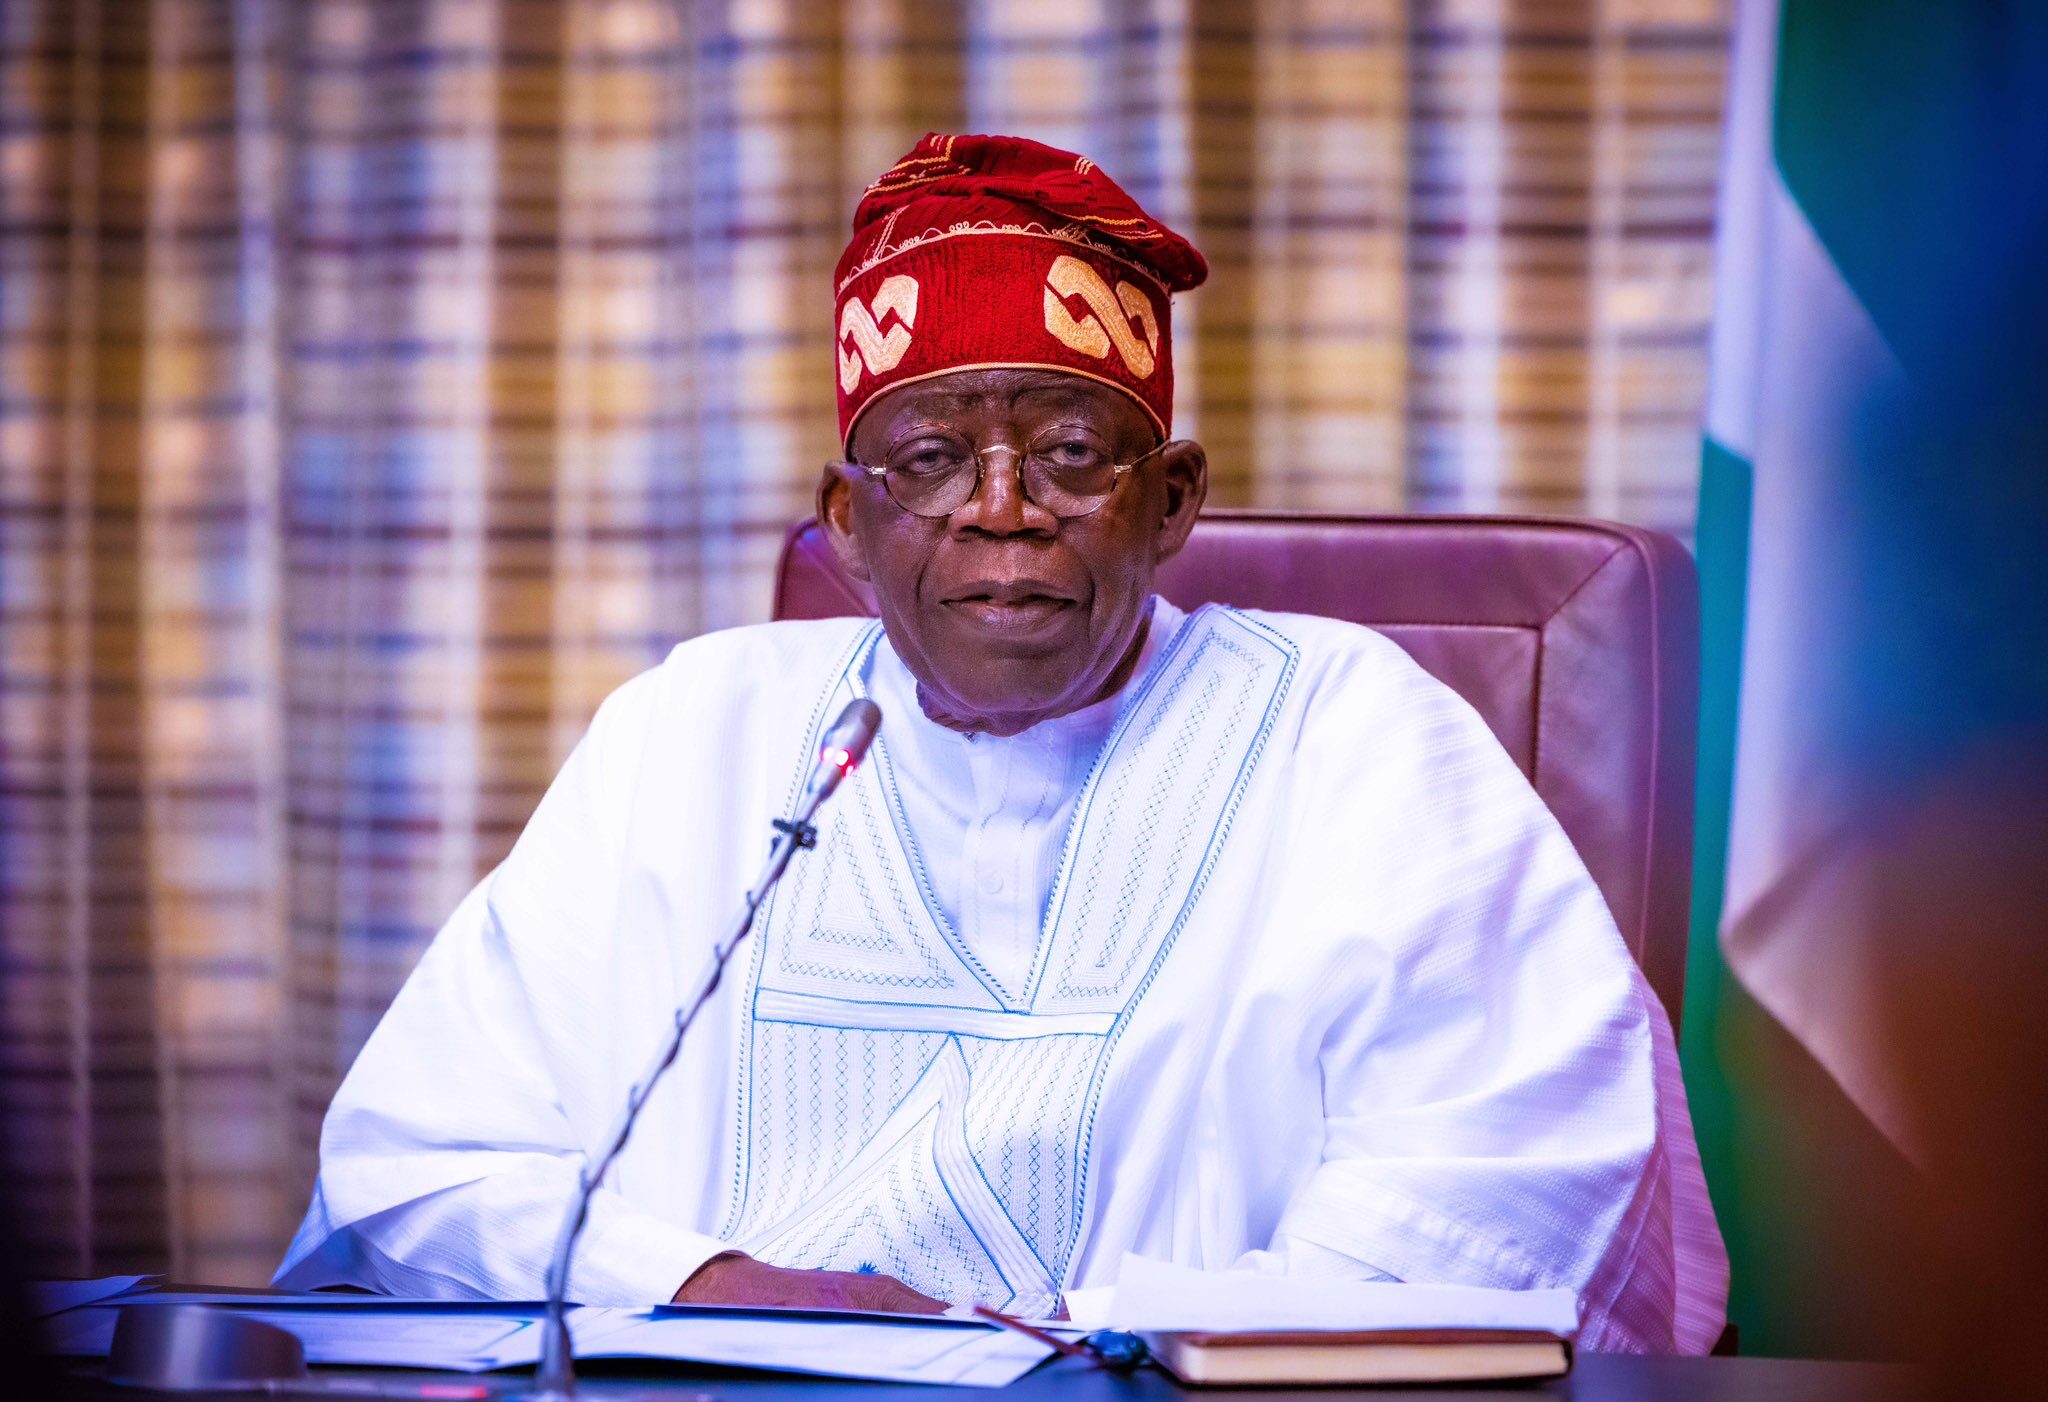 بولا أحمد تينوبو: رئيس نيجيريا الرئيس الدوري لمنظمة "إيكواس" 